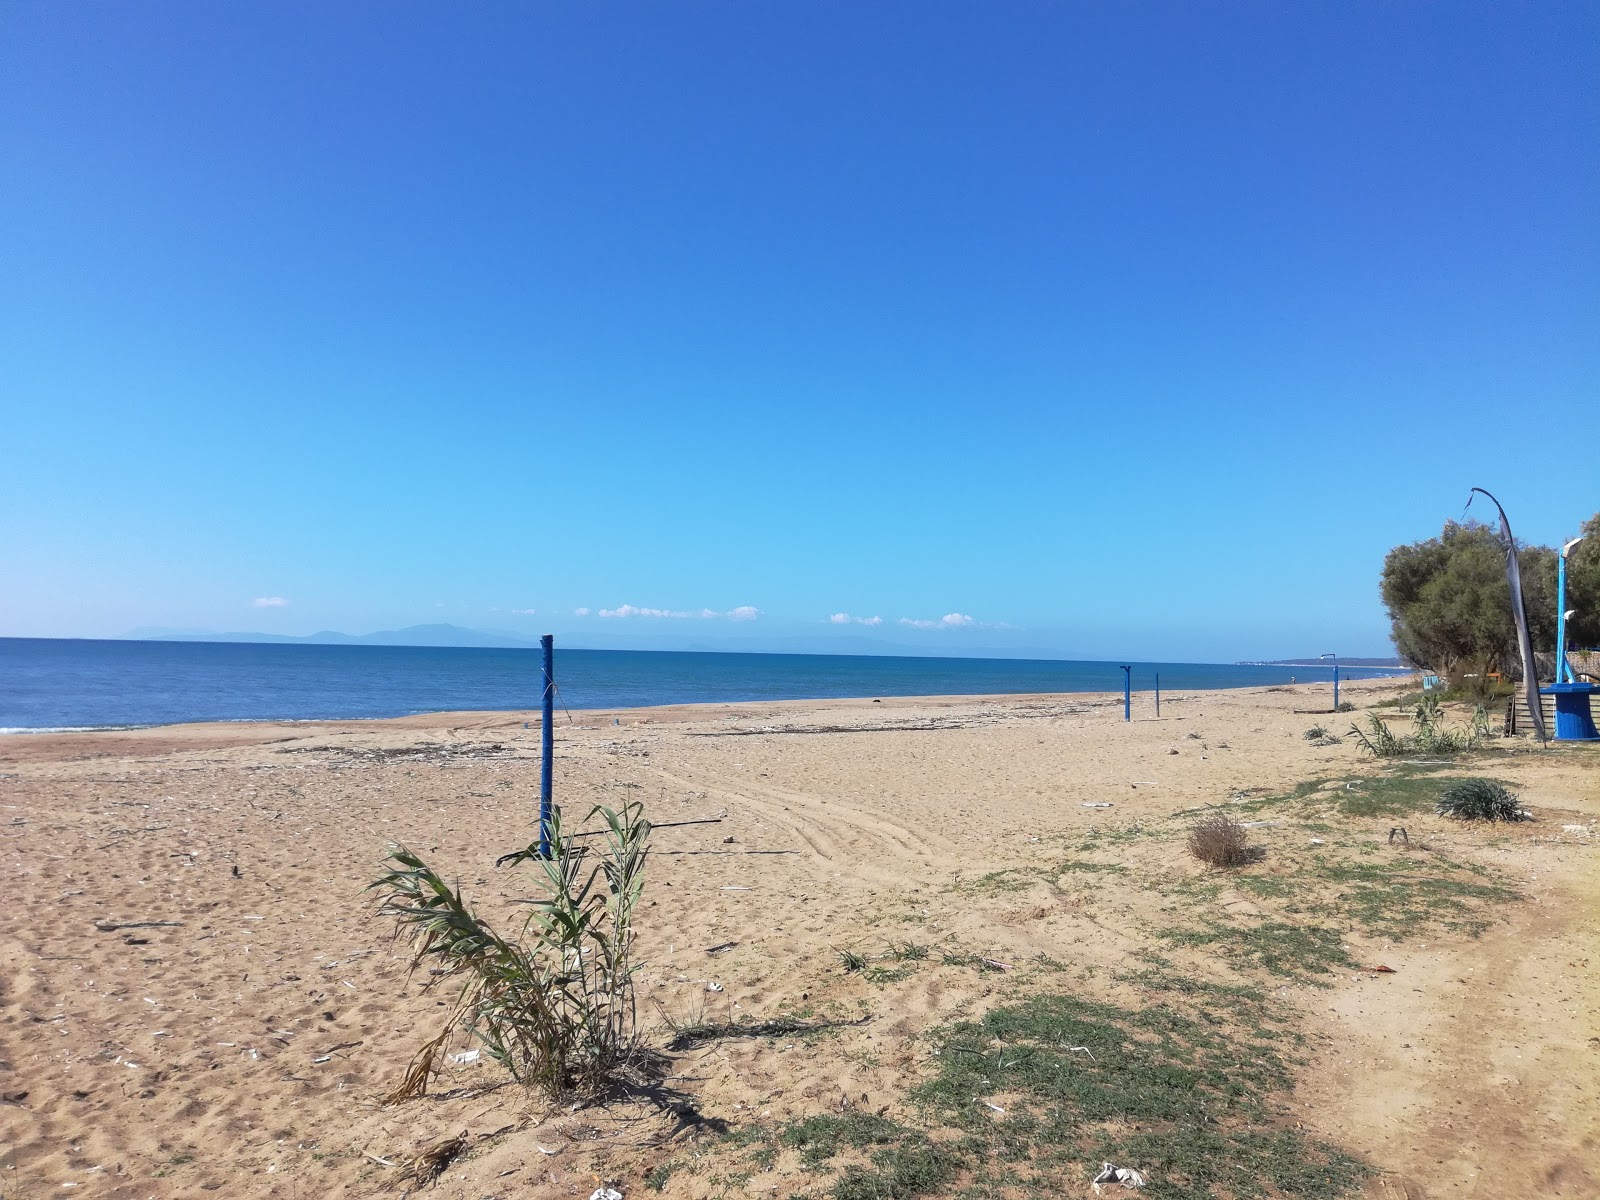 Zdjęcie Bouka beach położony w naturalnym obszarze